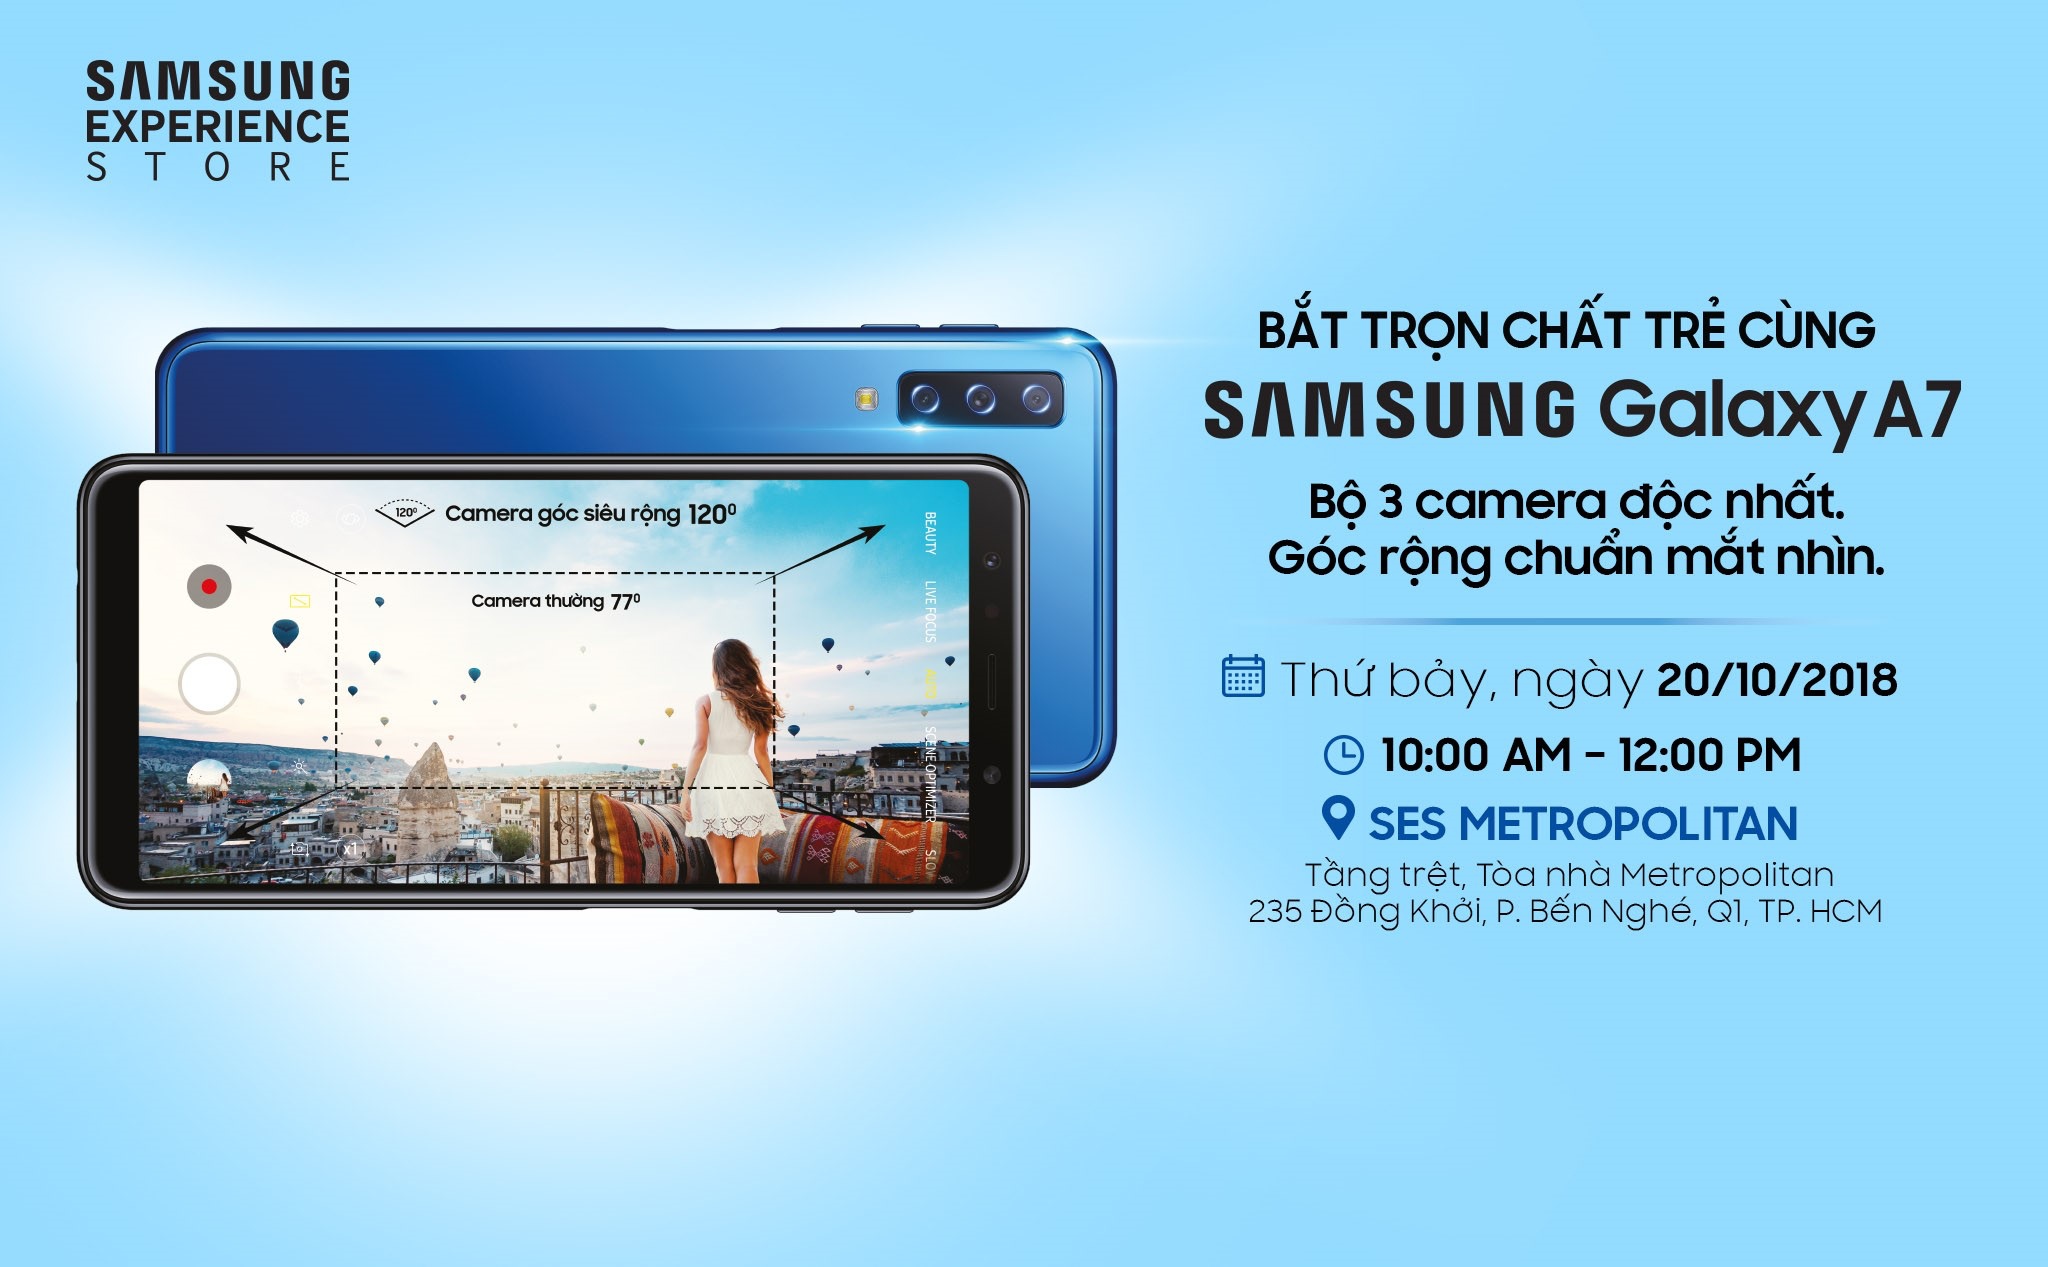 [QC] Mời tham gia Offline trải nghiệm “Bắt trọn chất trẻ cùng A7” từ Samsung